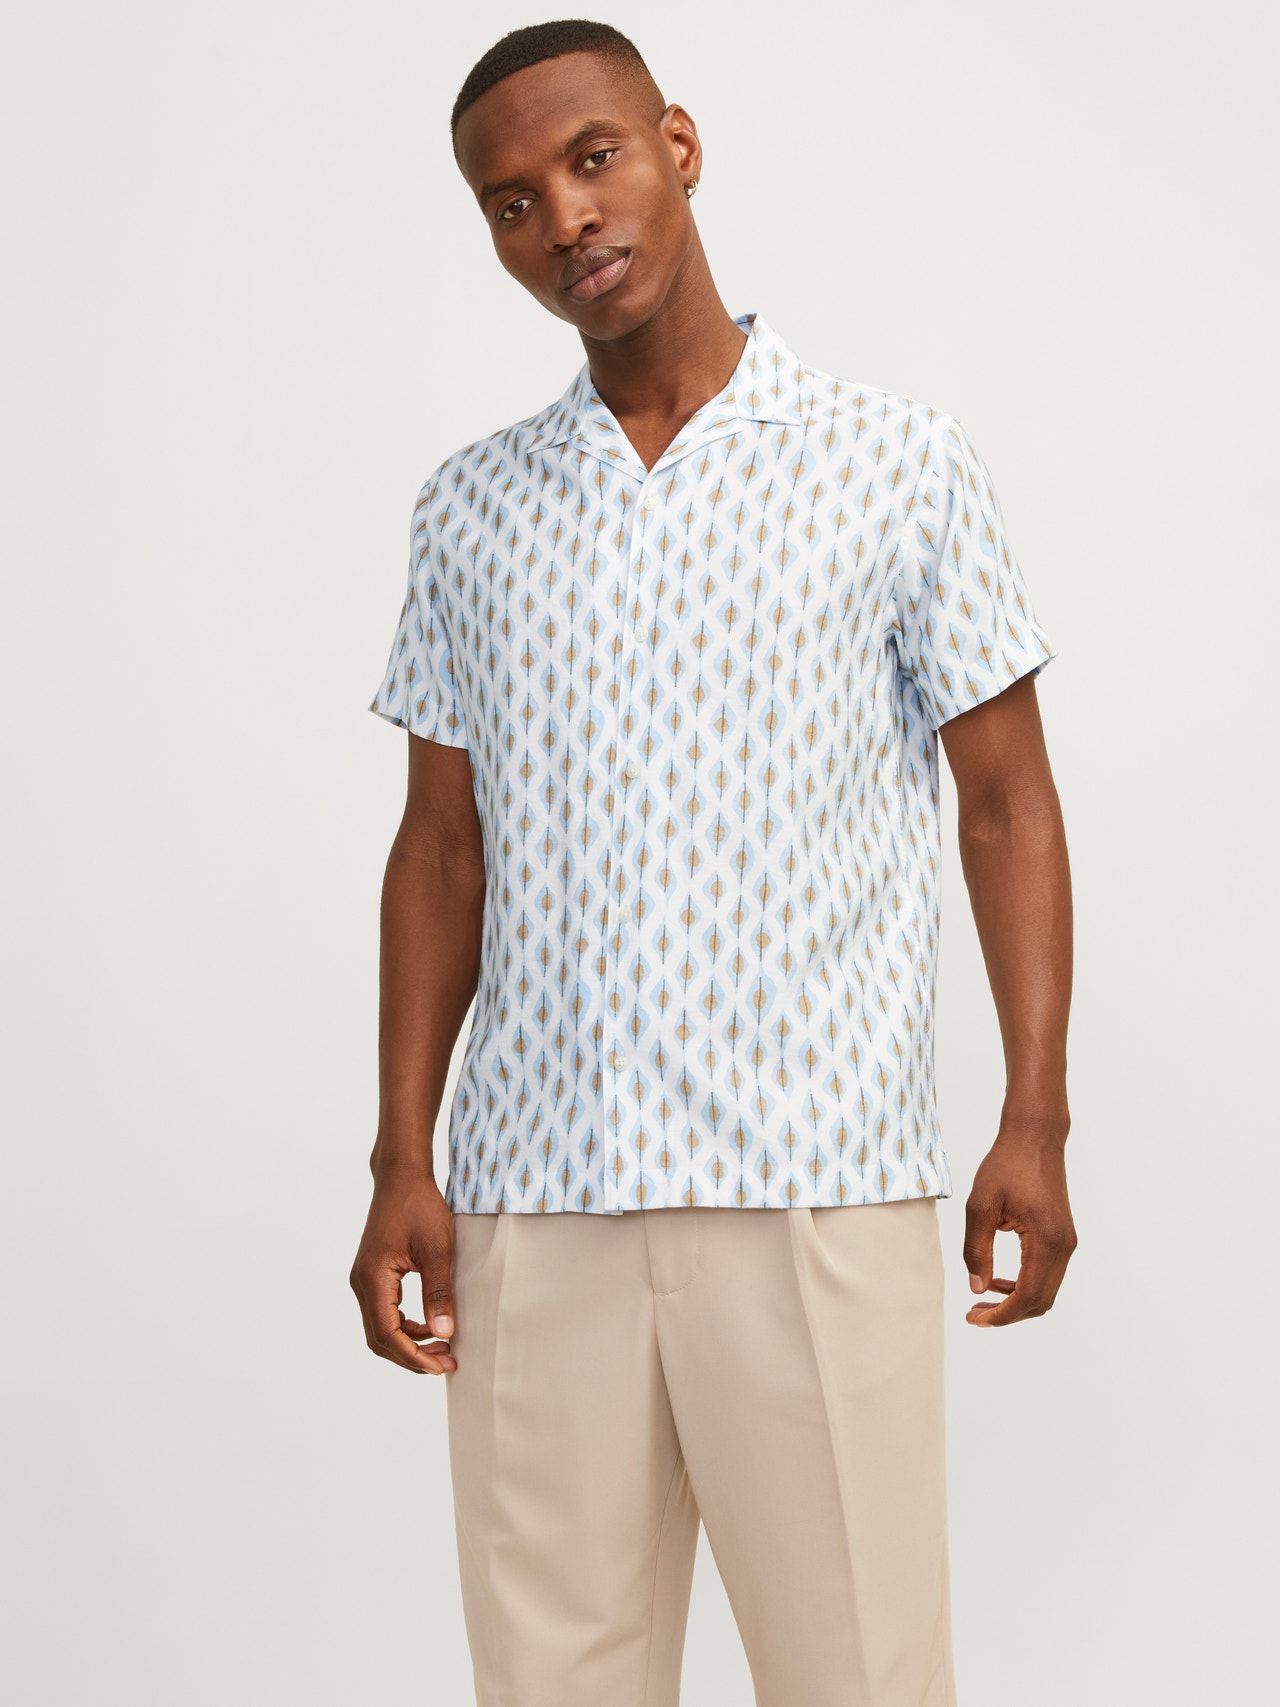 Jack & Jones Comfort Fit Resort overhemd -Cerulean - 12255172